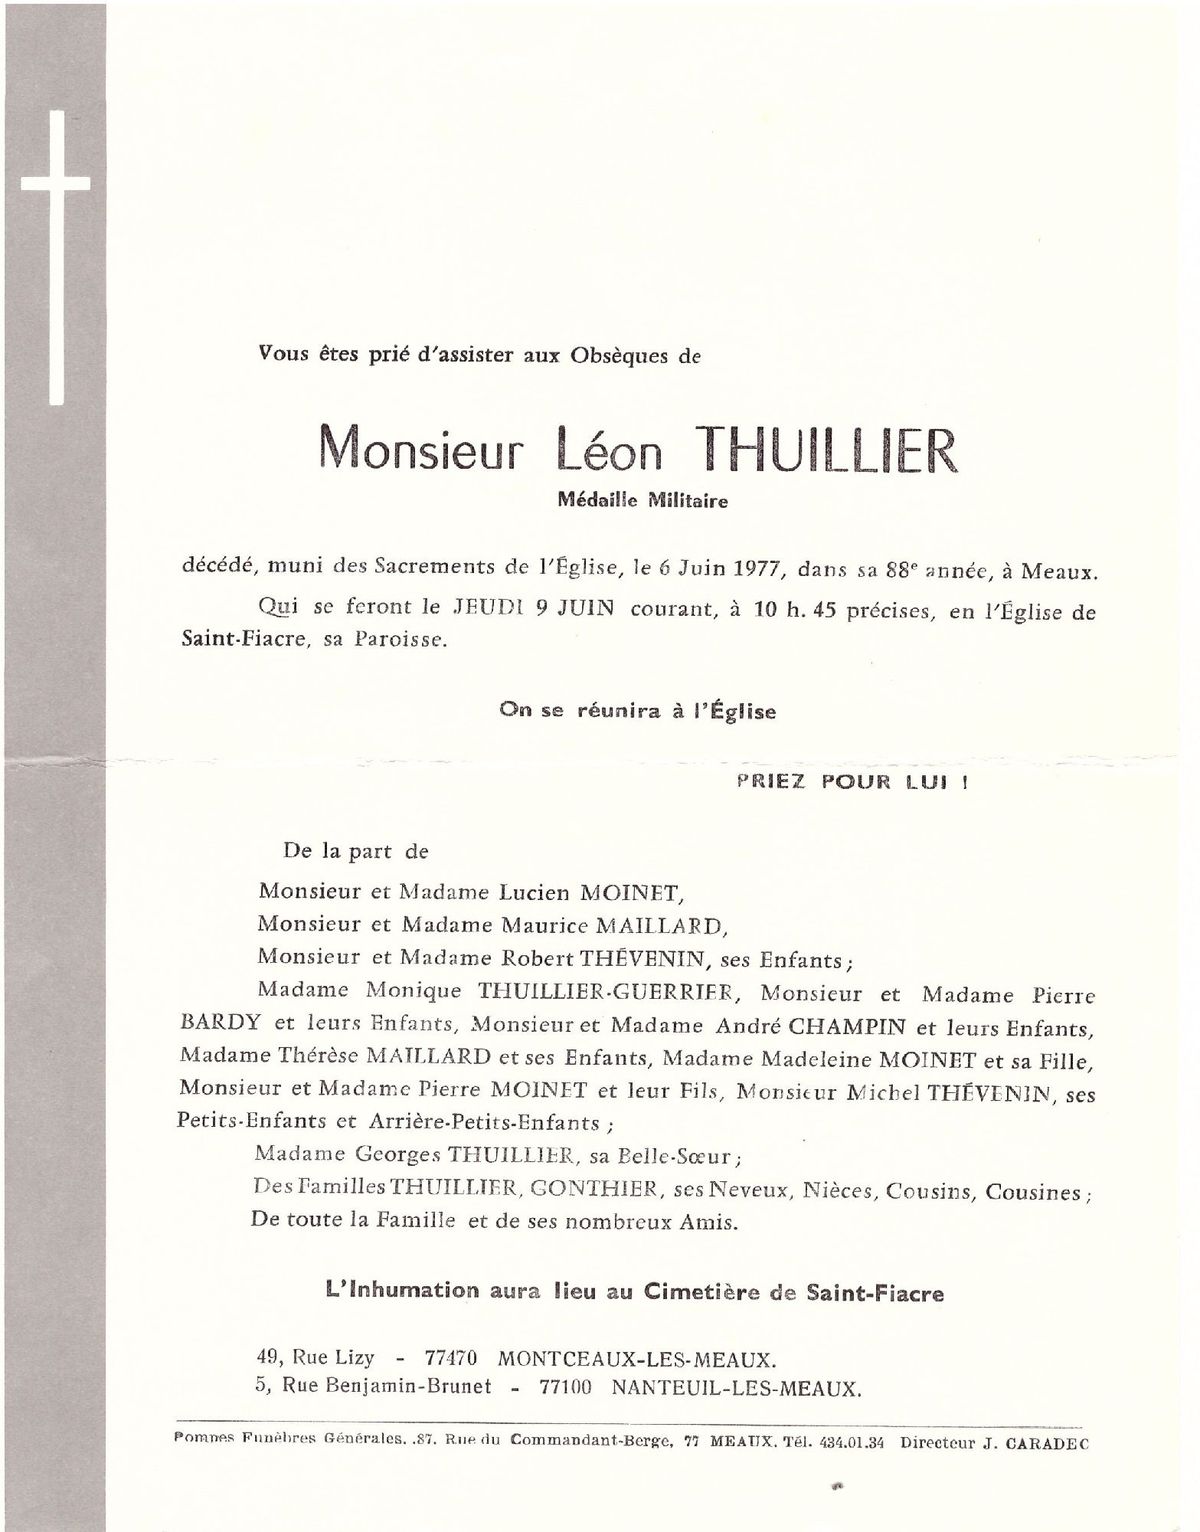 Leon THUILLIER 06/06/1977